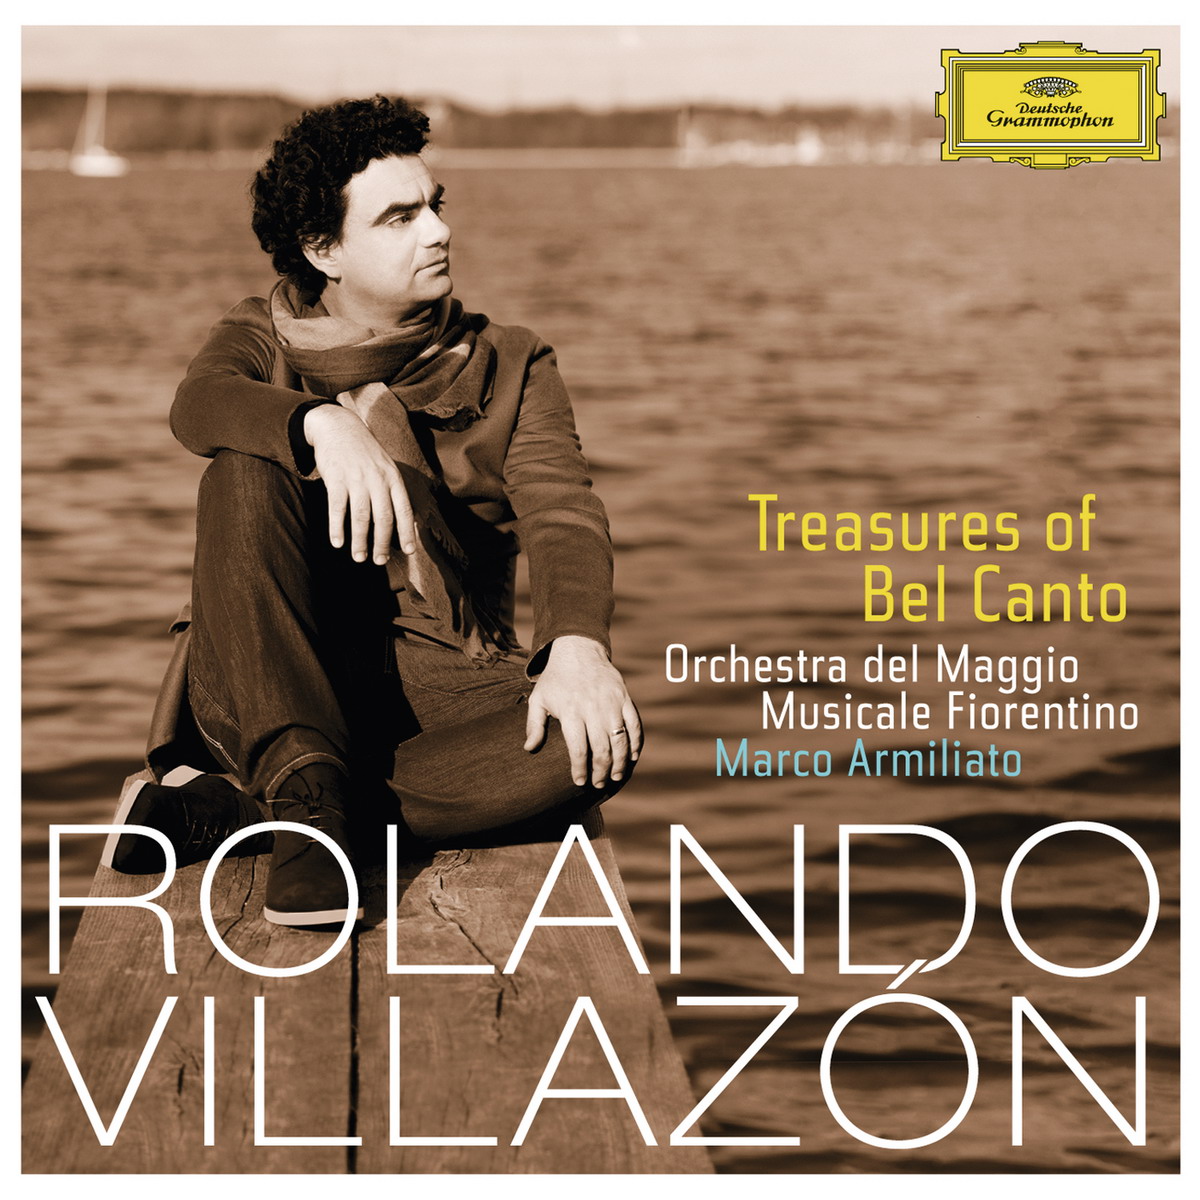 Rolando Villazon - Treasures of Bel Canto (2015) [Qobuz FLAC 24bit/96kHz]